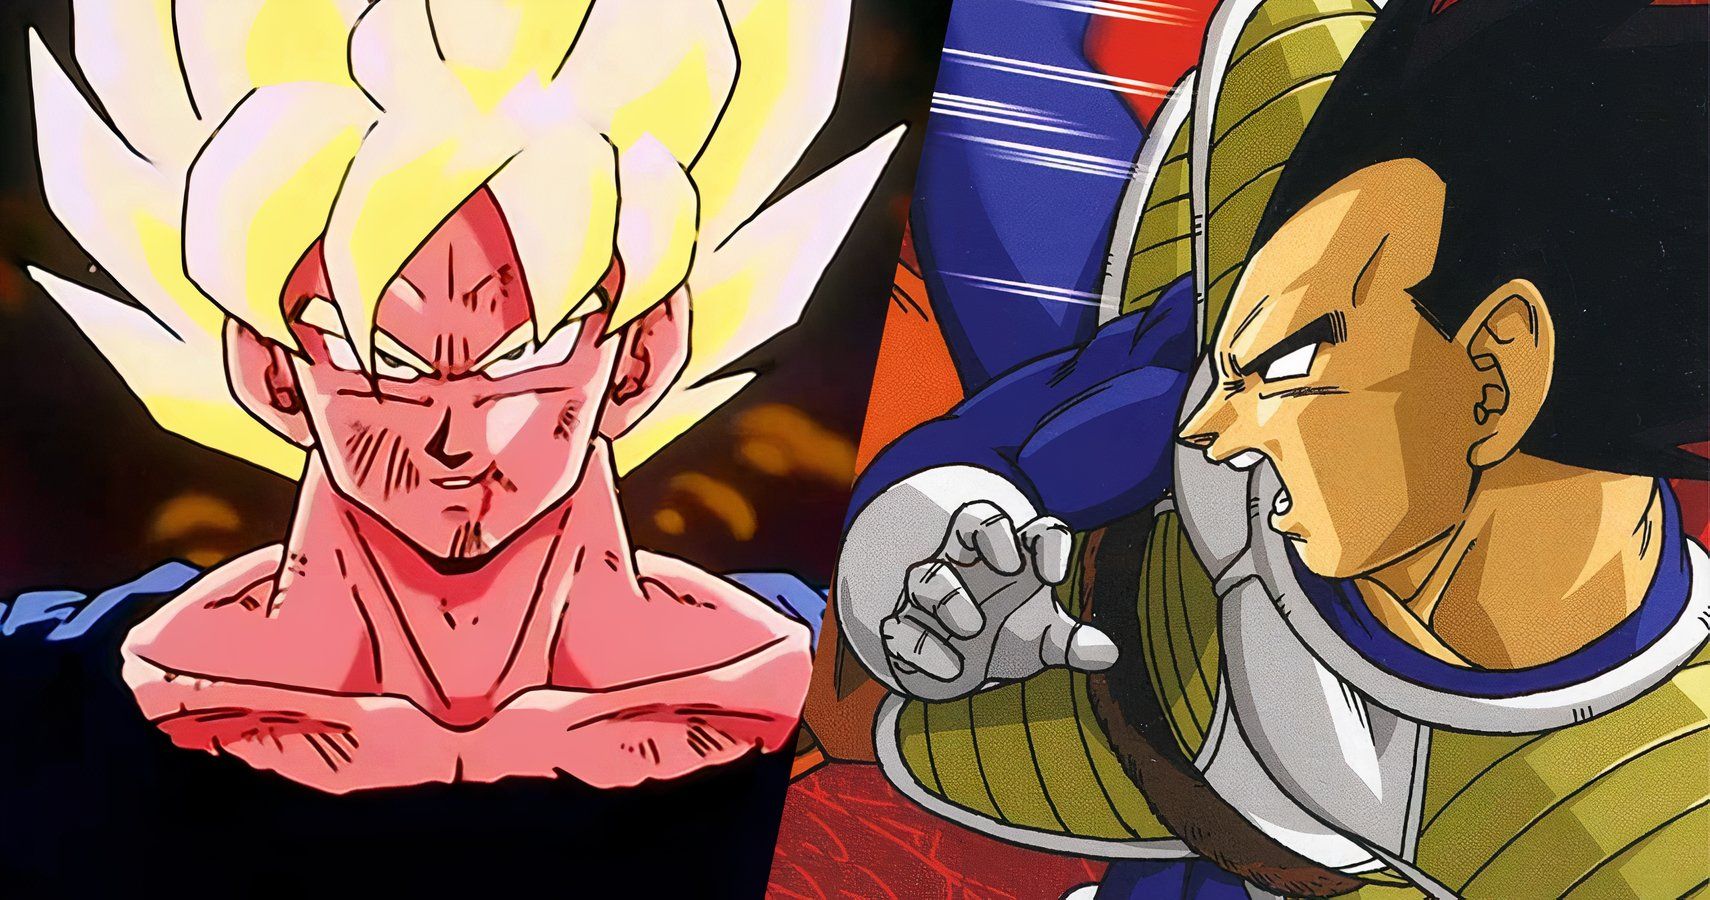 Super Saiyan Goku and Vegeta from the Dragon Ball Z Rock the Dragon set